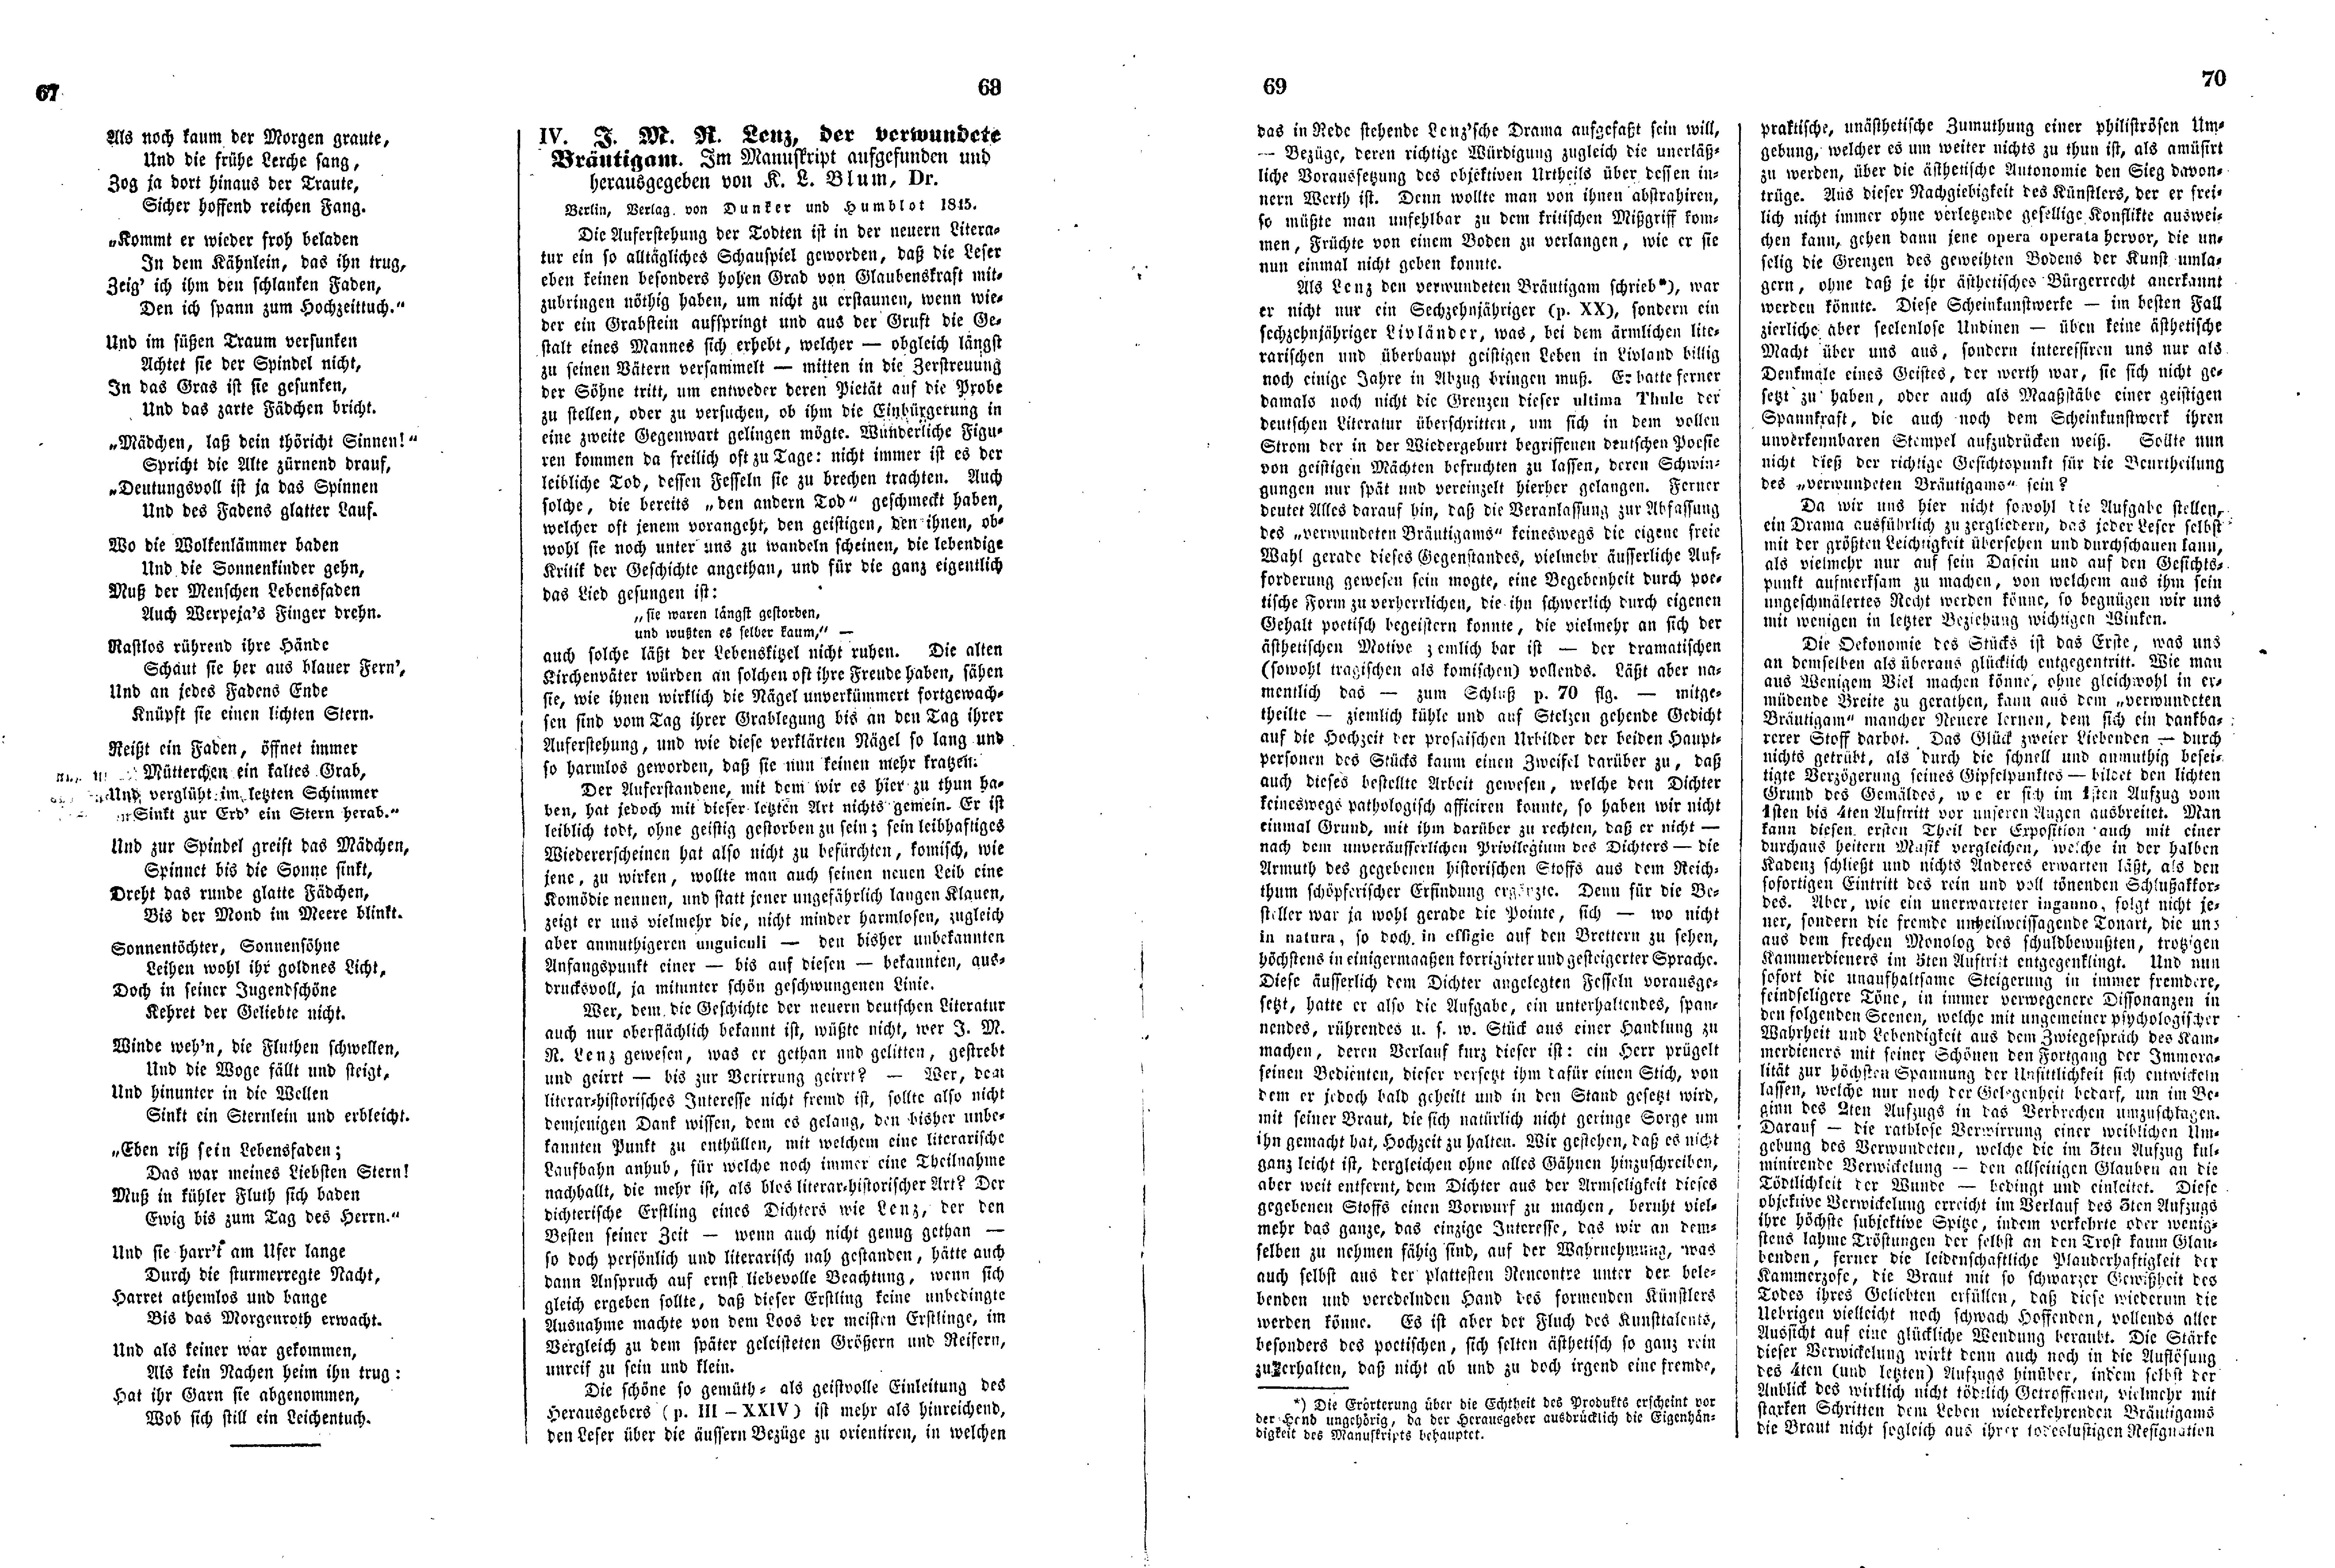 Das Inland [11] (1846) | 22. (67-70) Основной текст